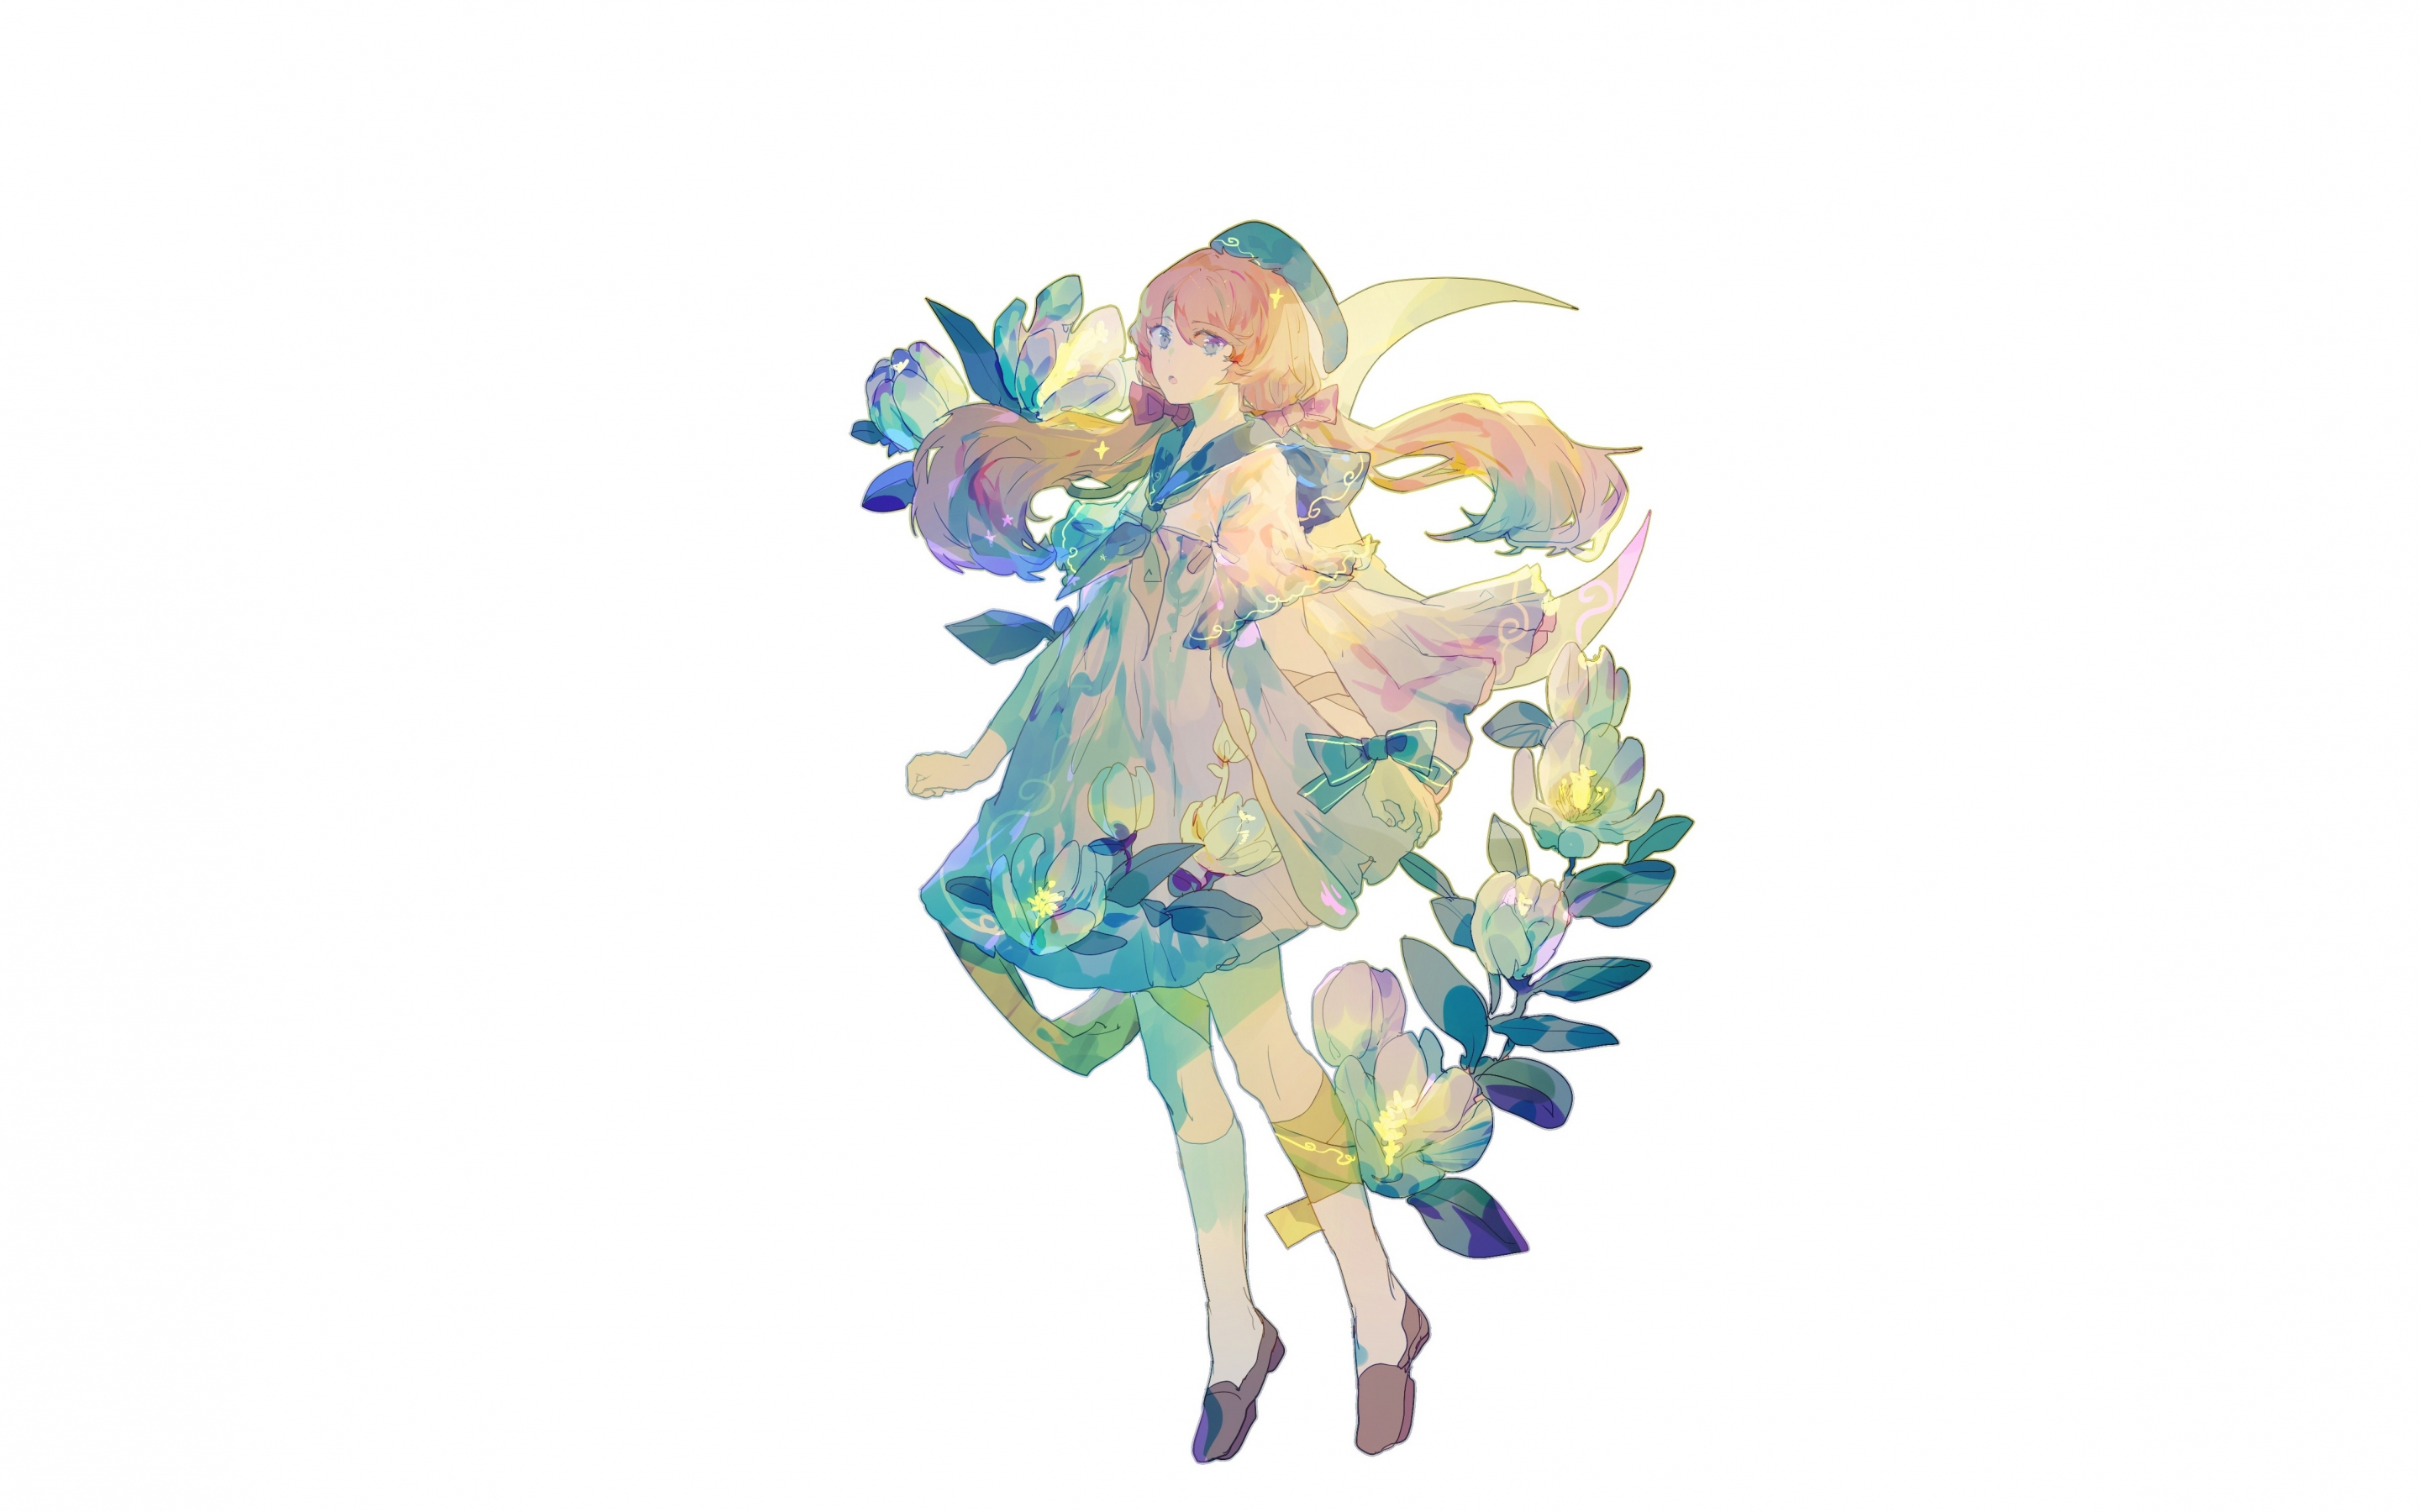 Minimal, artwork, original, cute, anime girl, 2880x1800 wallpaper